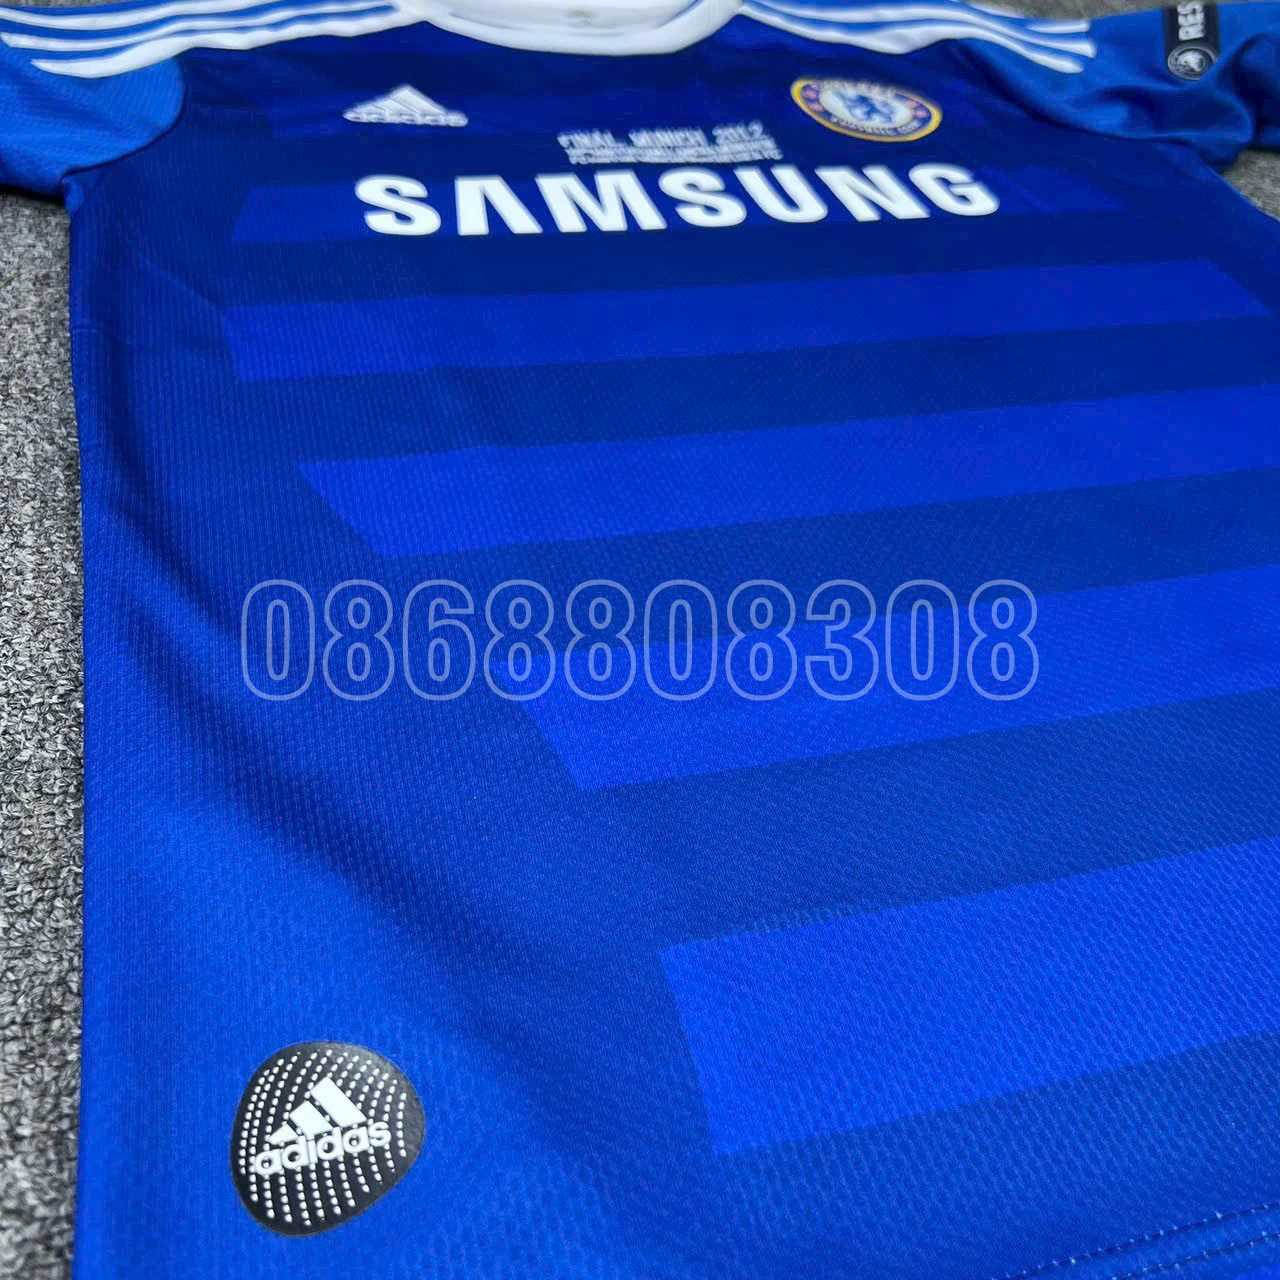 Bộ quần áo bóng đá Chelsea samsung màu xanh mùa 12 13 năm 2012 2013 vải thái full logo thêu mặt trước